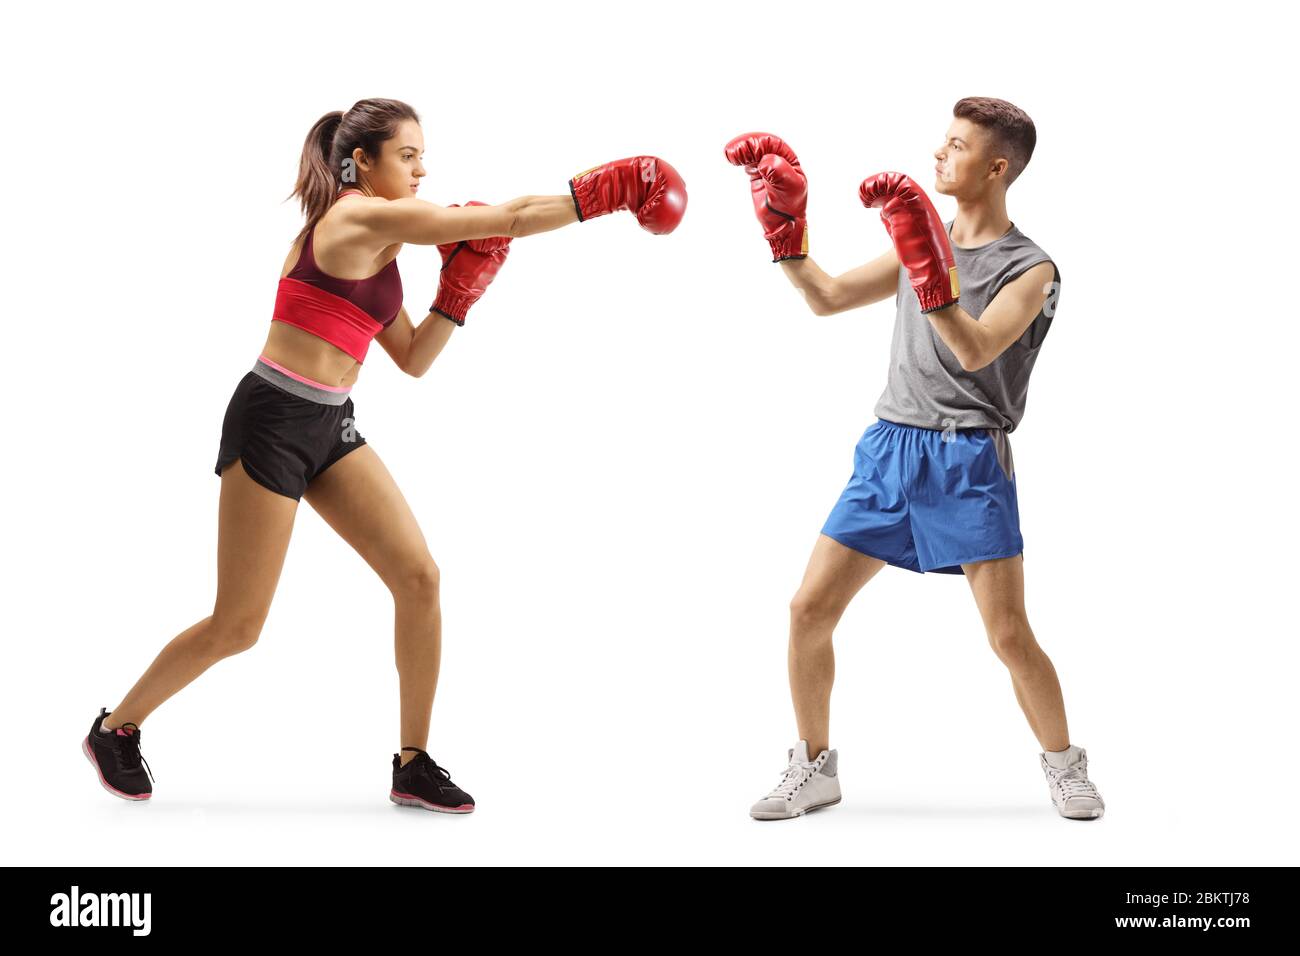 Prise de vue en longueur d'une jeune fille et d'un gars de sportswear qui se battent avec des gants de boxe isolés sur fond blanc Banque D'Images